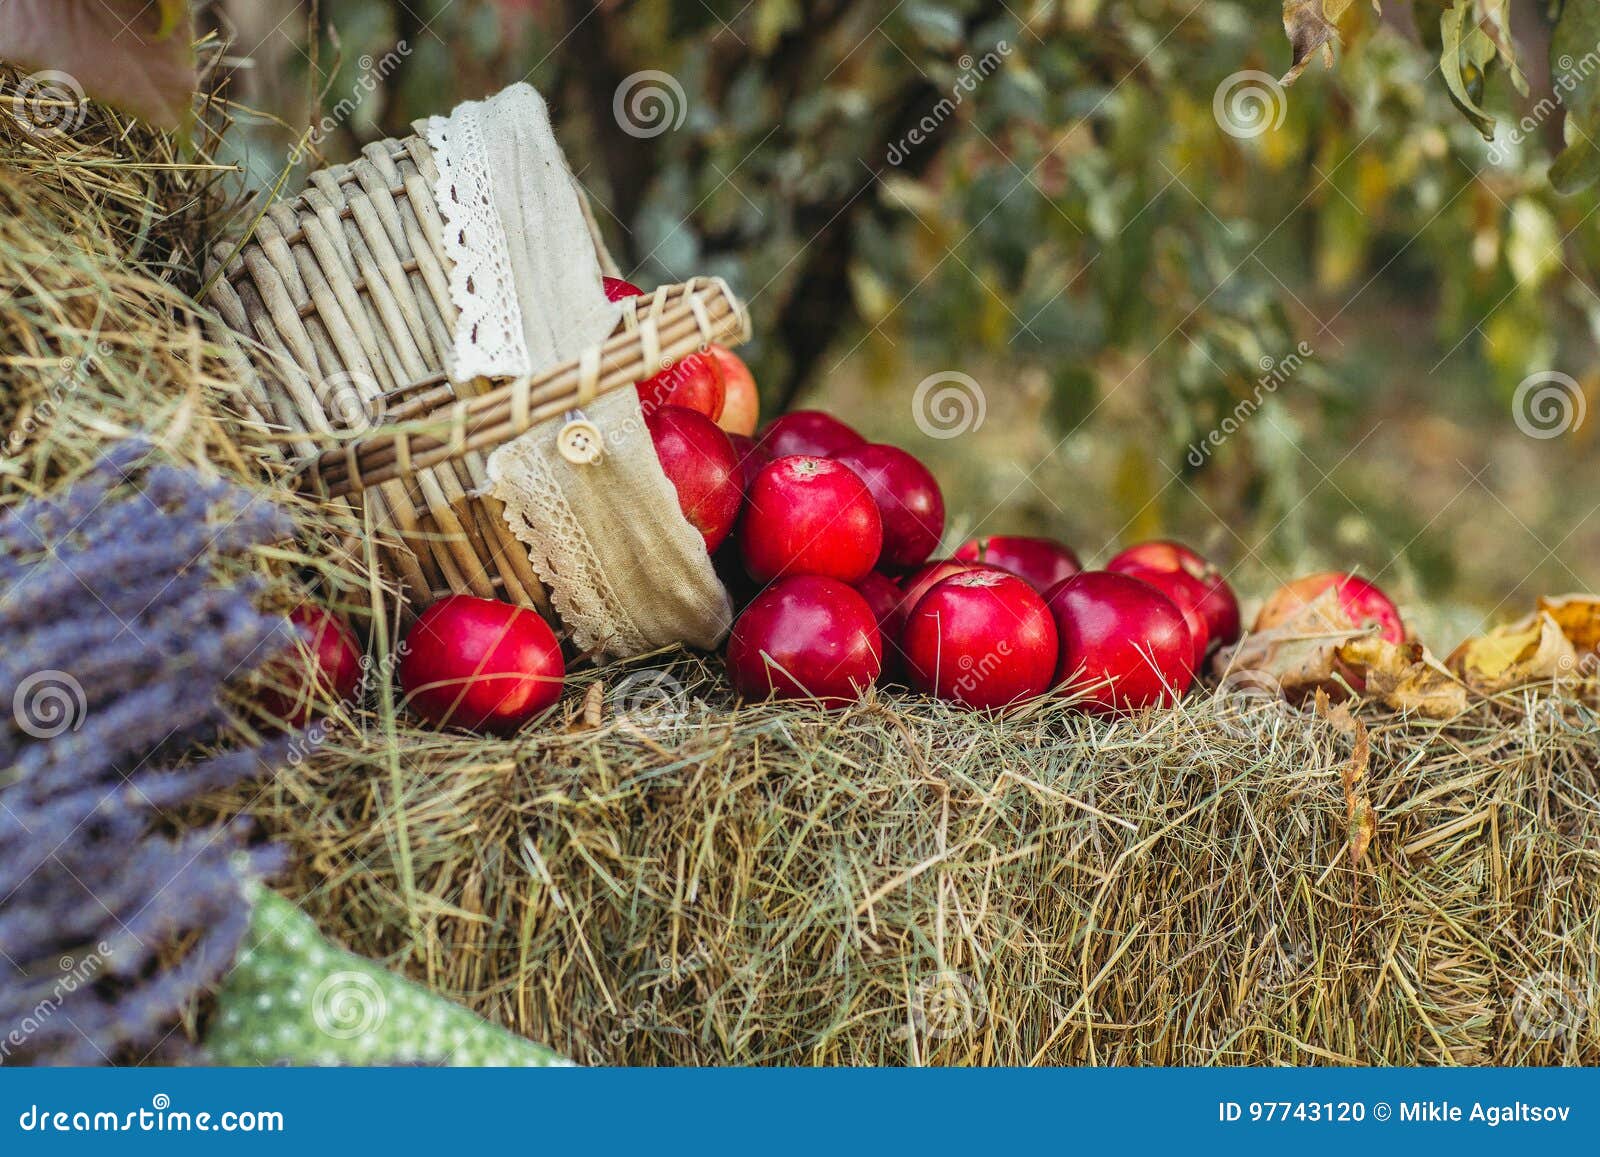 Пахло свежим сеном. Сено с яблоками. Яблоки на сене. Фотозона с яблоками. Яблоки в соломе.